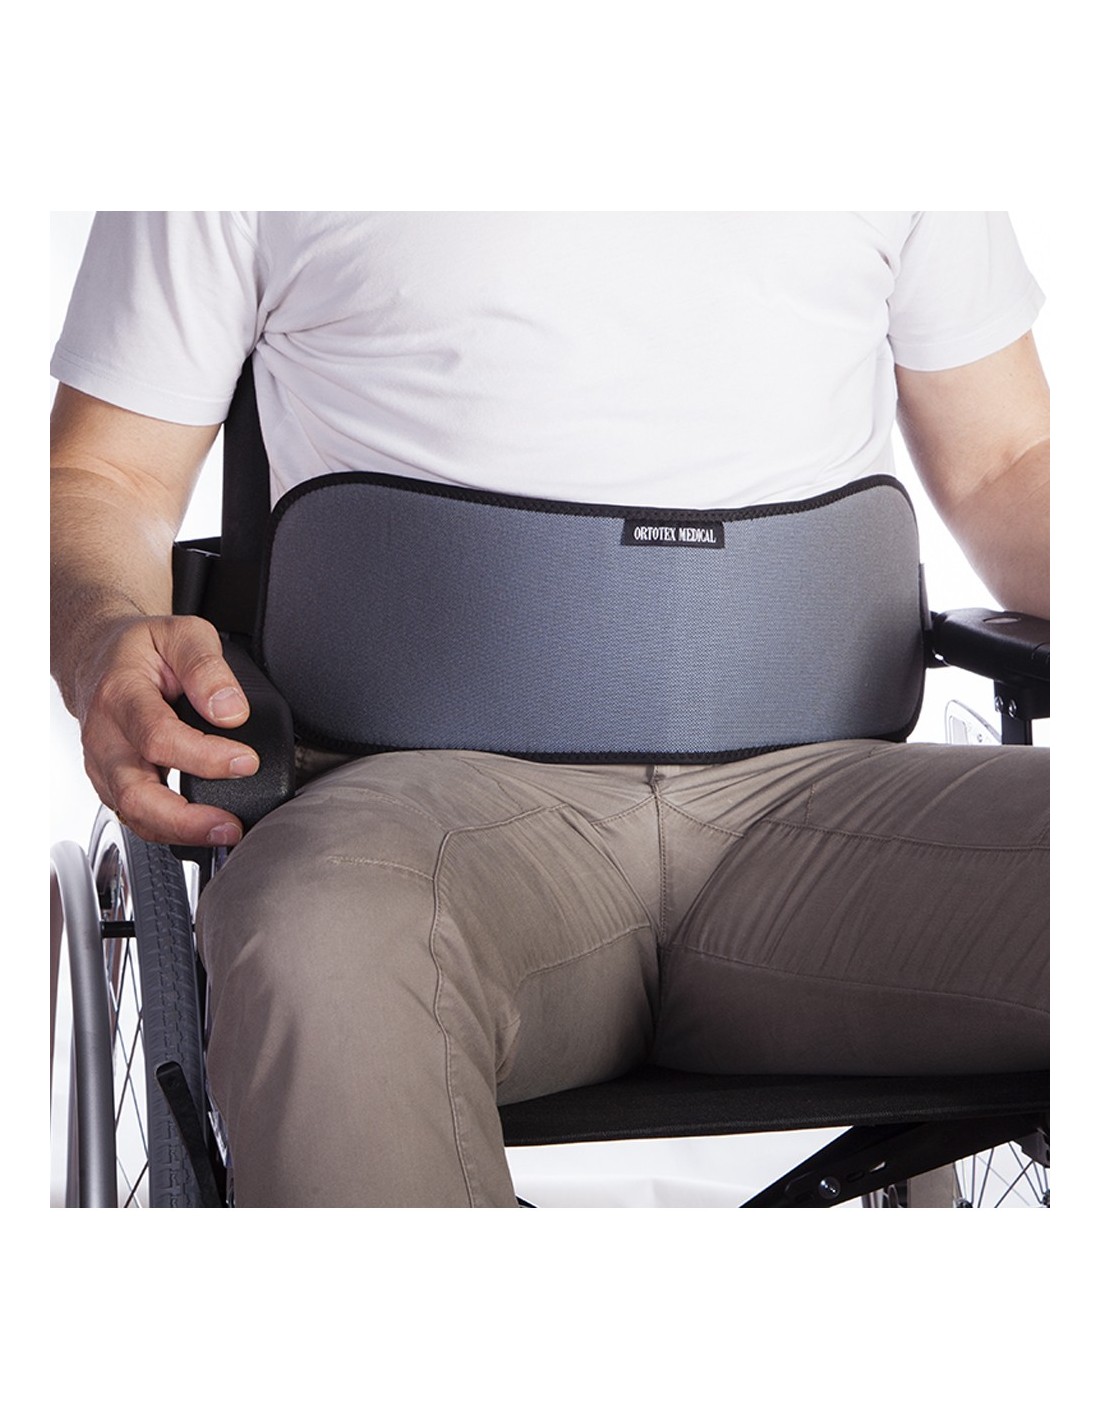 https://ortocasa.com/20084-thickbox_default/cinturon-abdominal-para-silla-de-ruedas-y-sillas-de-descanso.jpg